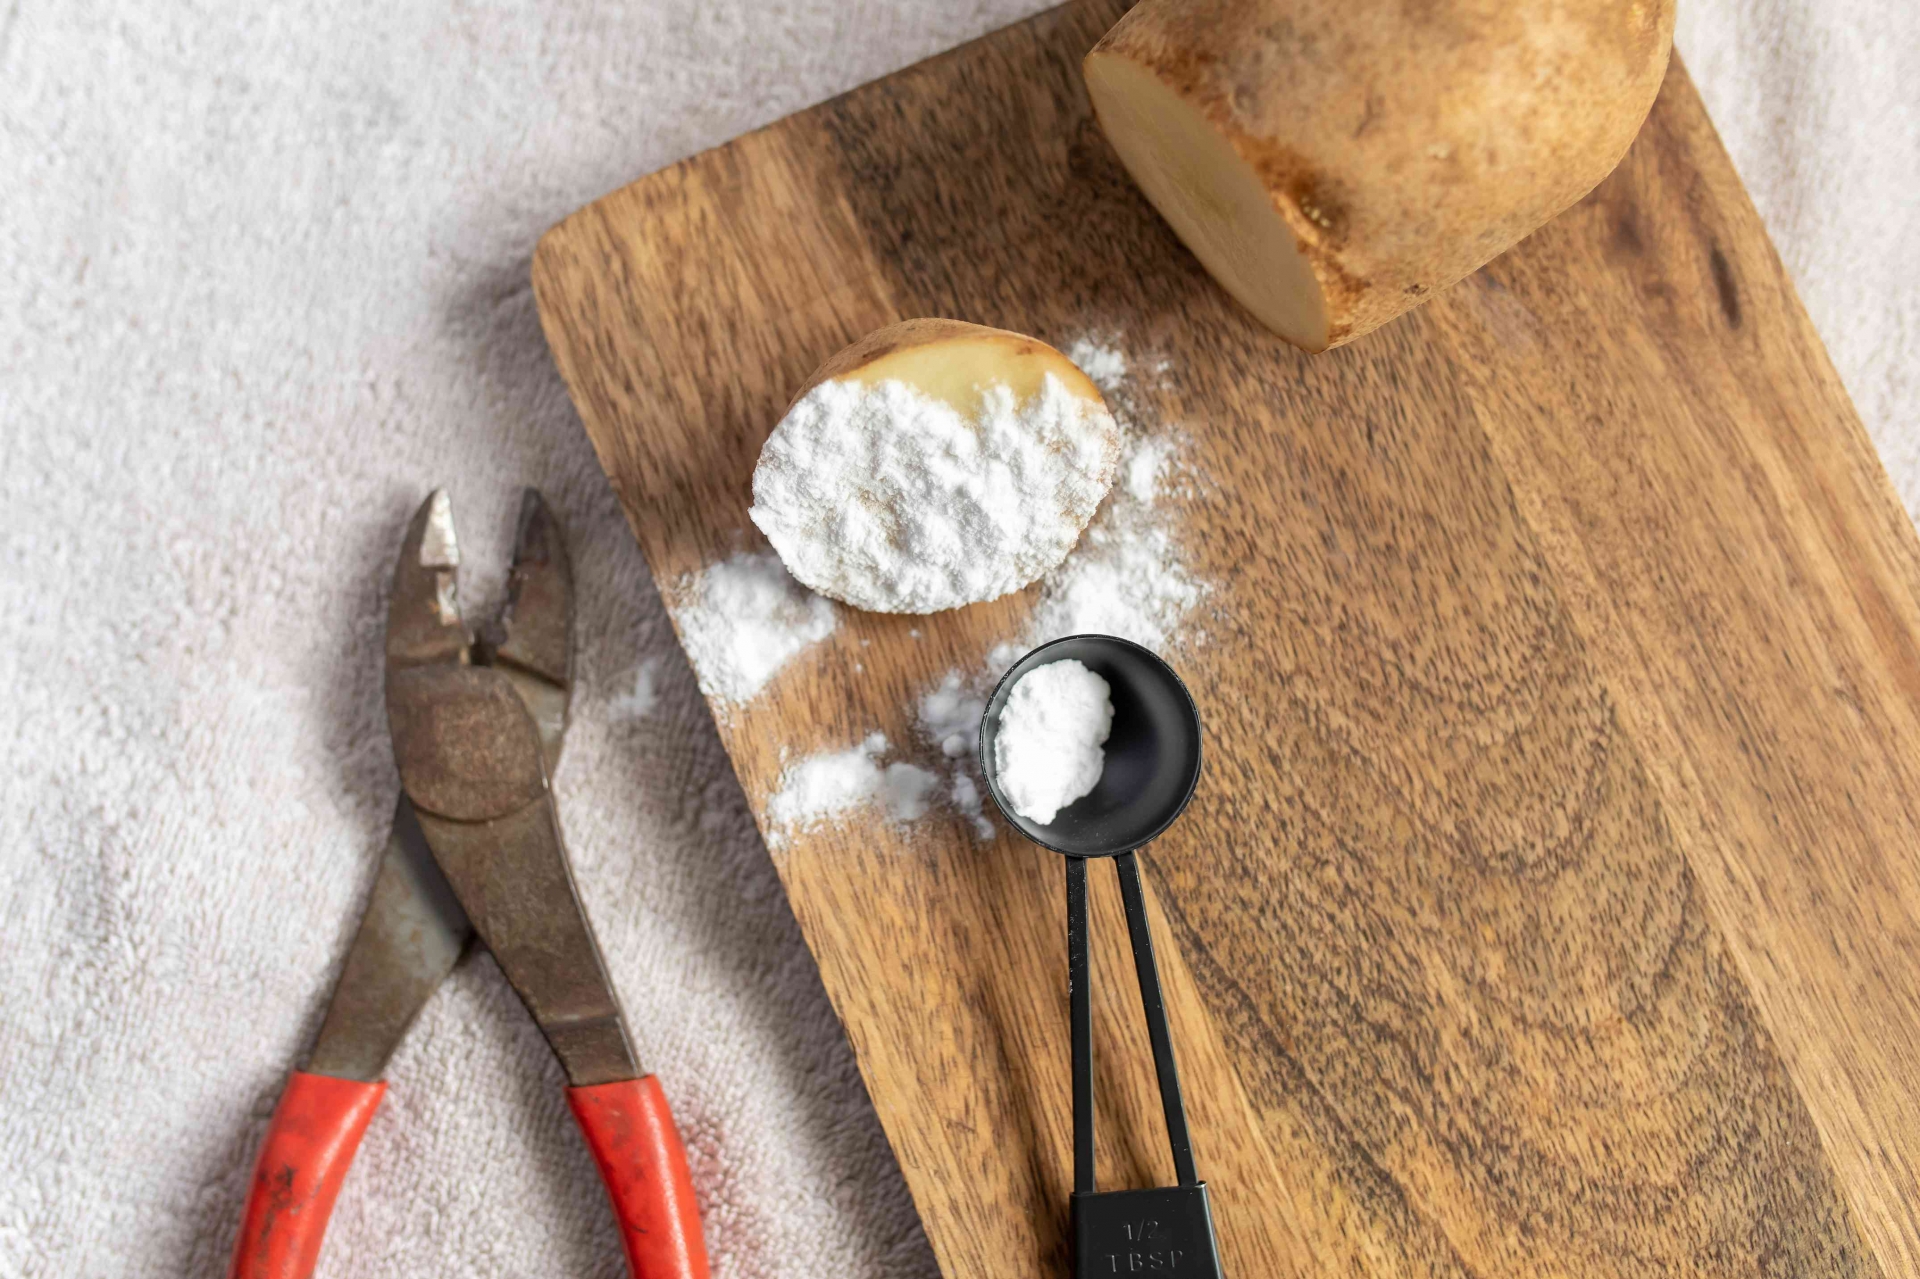 Khoai tây có chứa axit oxalic, khi kết hợp với baking soda (hoặc muối ăn) sẽ tạo thành hỗn hợp đánh bay vết gỉ một cách an toàn.